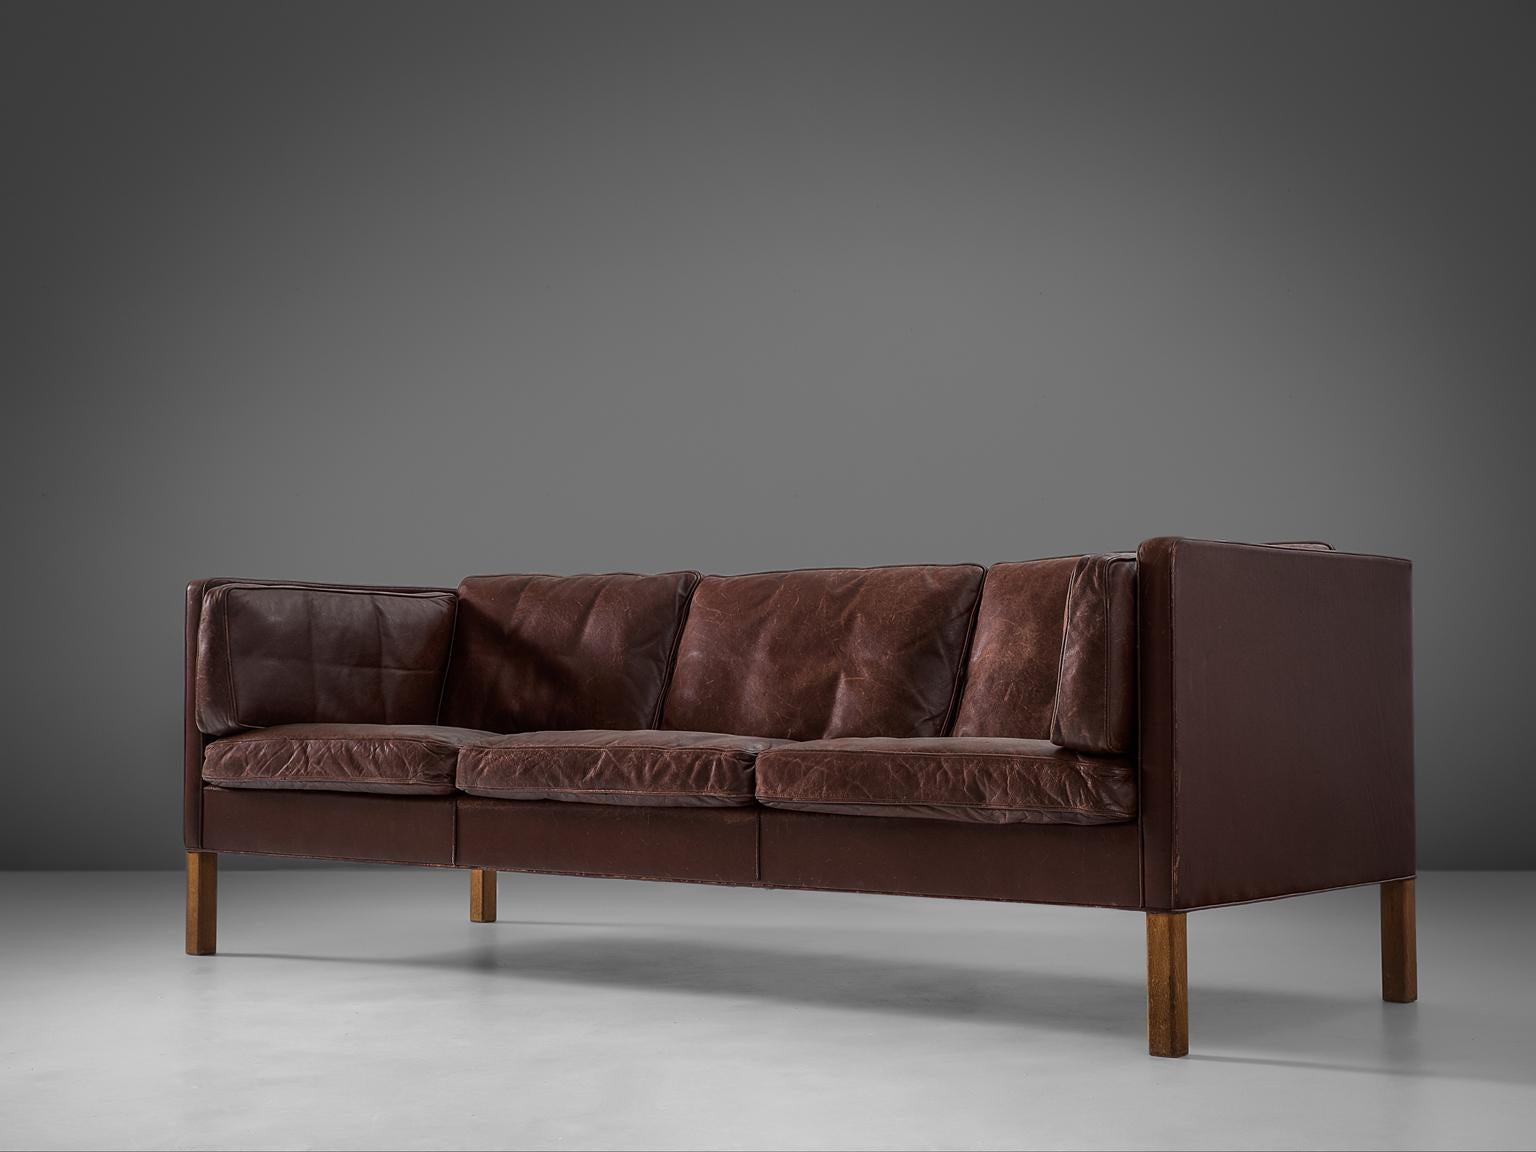 Børge Mogensen für Fredericia Stolefabrik, Sofa Modell 2443, Leder und Eiche, Dänemark, 1960er Jahre.

Dieses Design stammt aus den 1960er Jahren und hat wunderbare Formen und Komfort. Das Dreisitzer-Sofa wird mit losen Kissen in Sitz, Rücken und